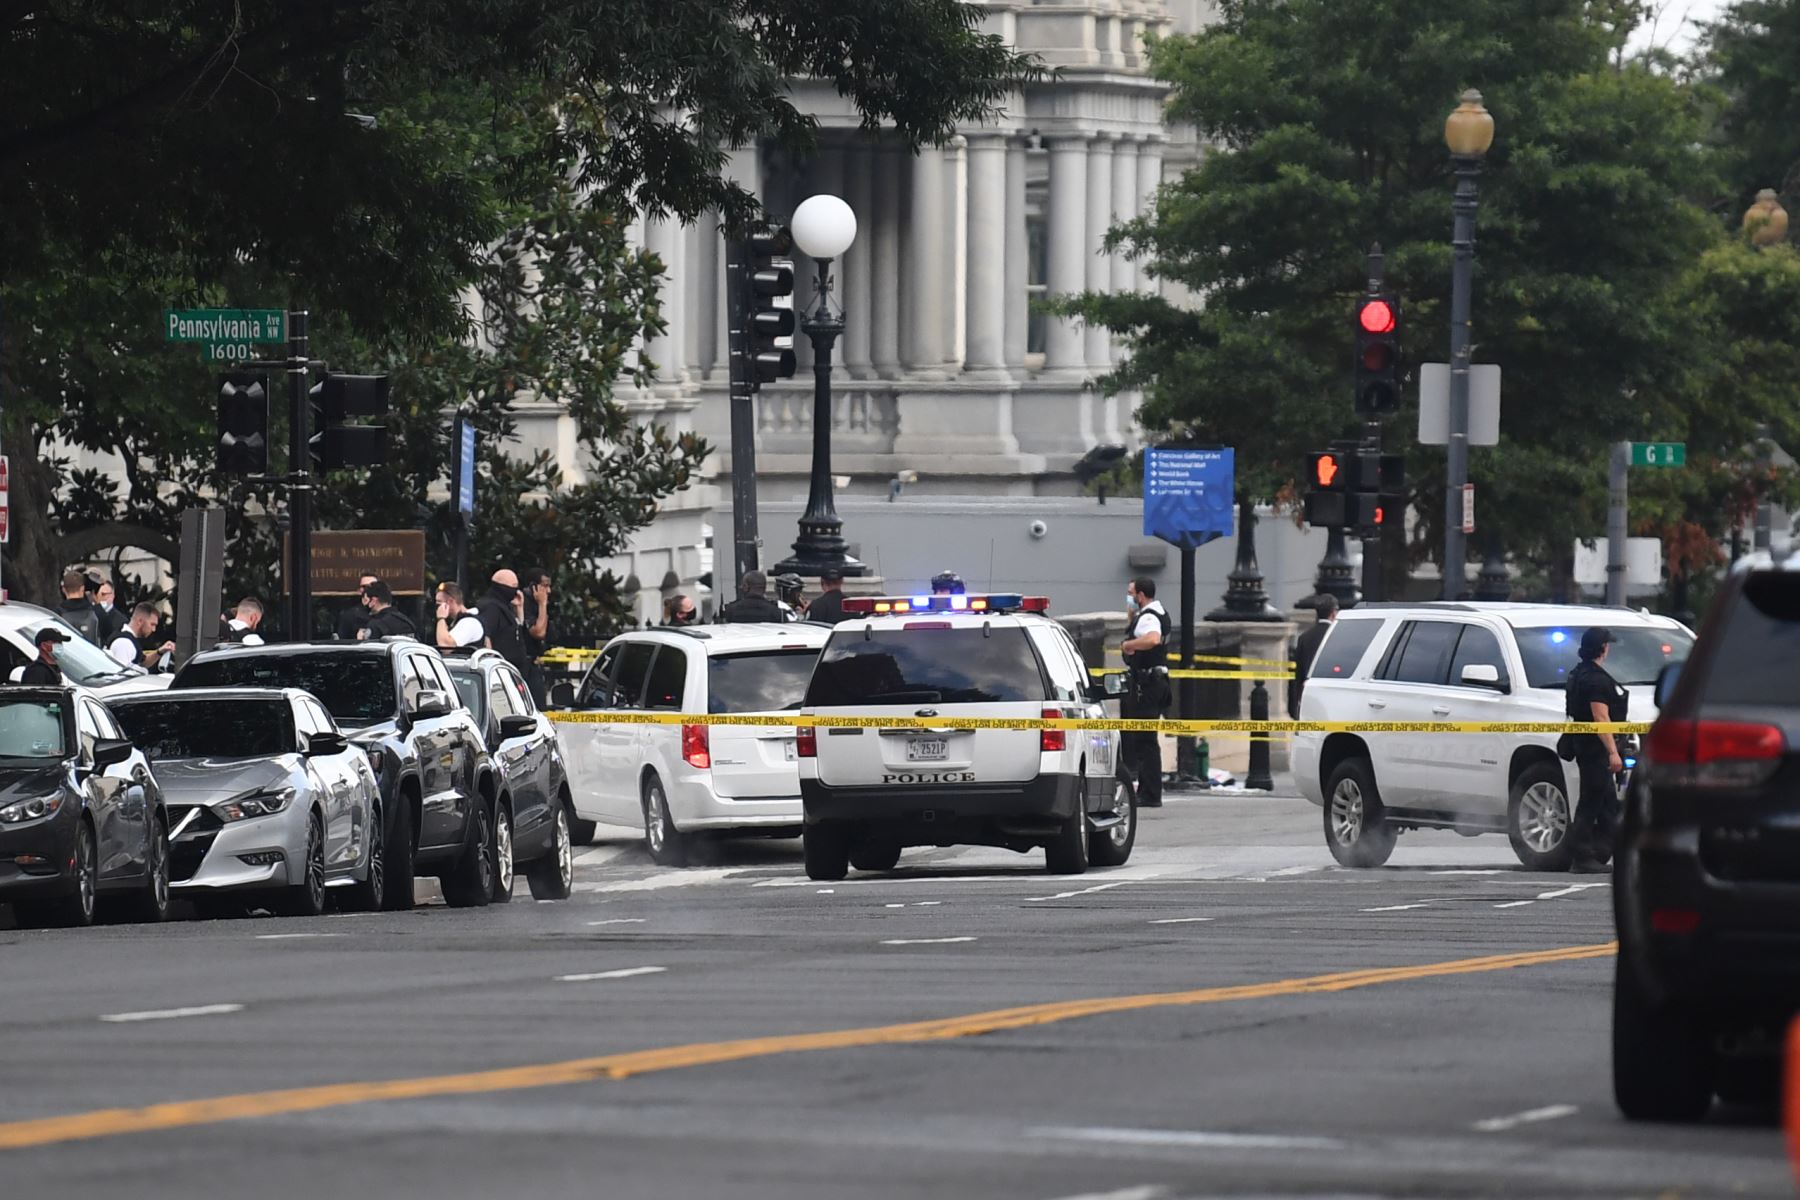 Los coches de la policía bloquean la entrada a la avenida Pennsylvania cerca de la Casa Blanca poco después de que los guardias del Servicio Secreto dispararan a una persona que aparentemente estaba armada, fuera de la Casa Blanca.
Foto: AFP